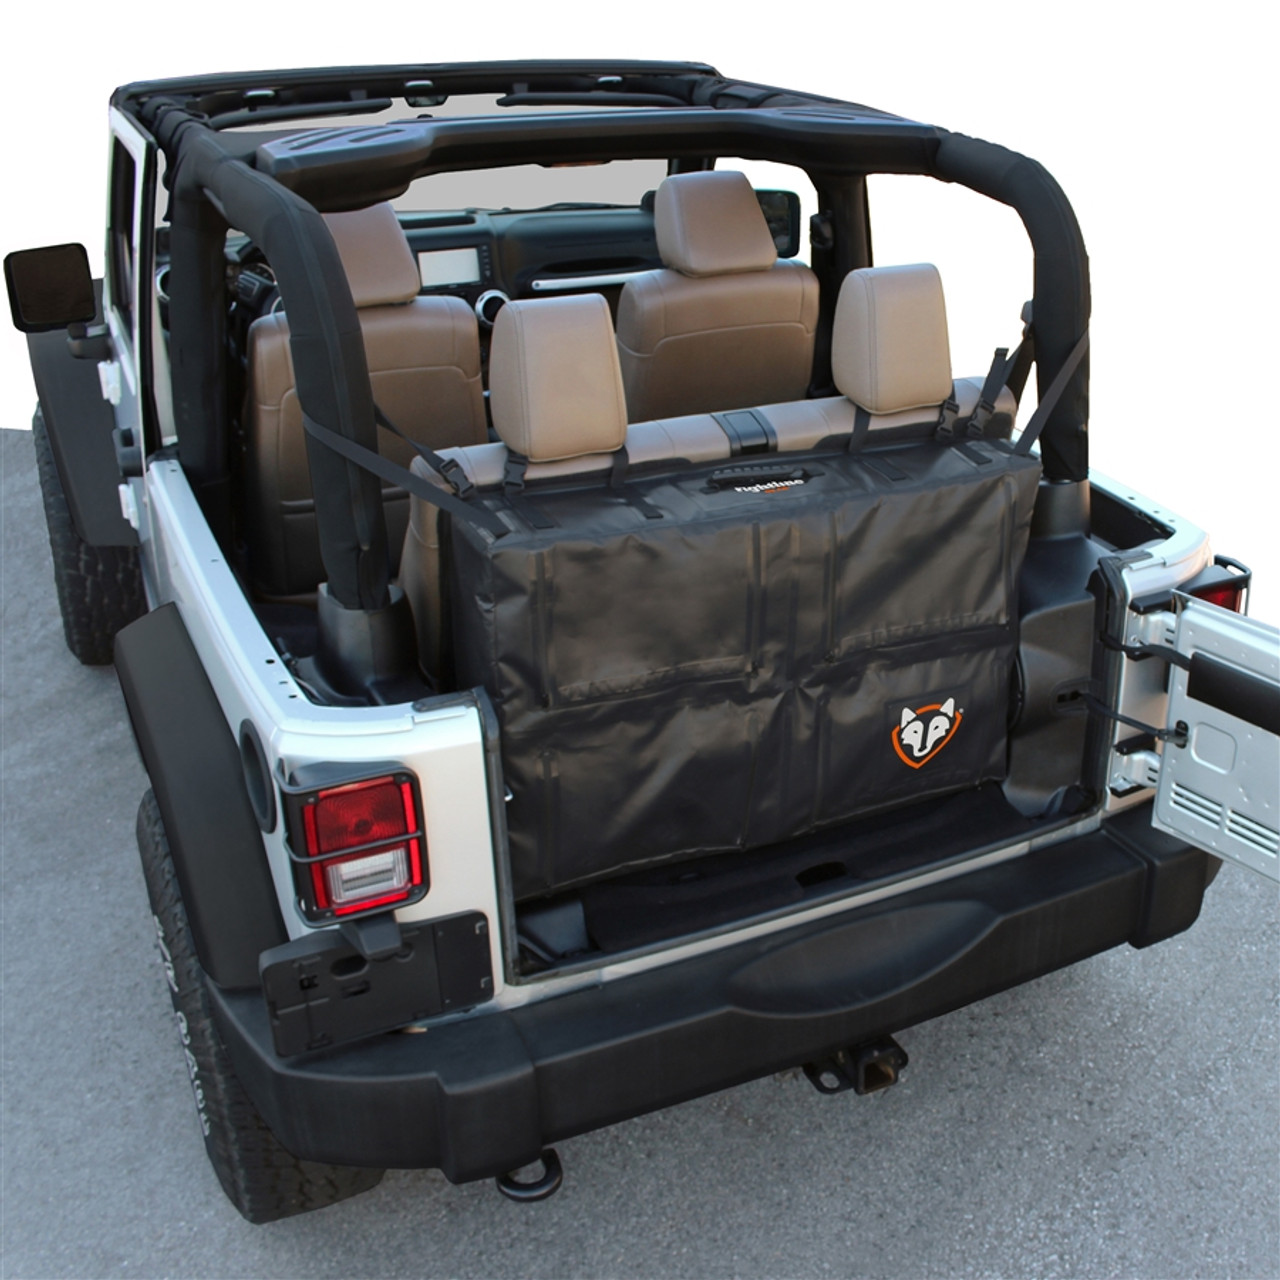 Rightline Jeep JK Trunk Storage Bag (Black) - 100J72-2-B